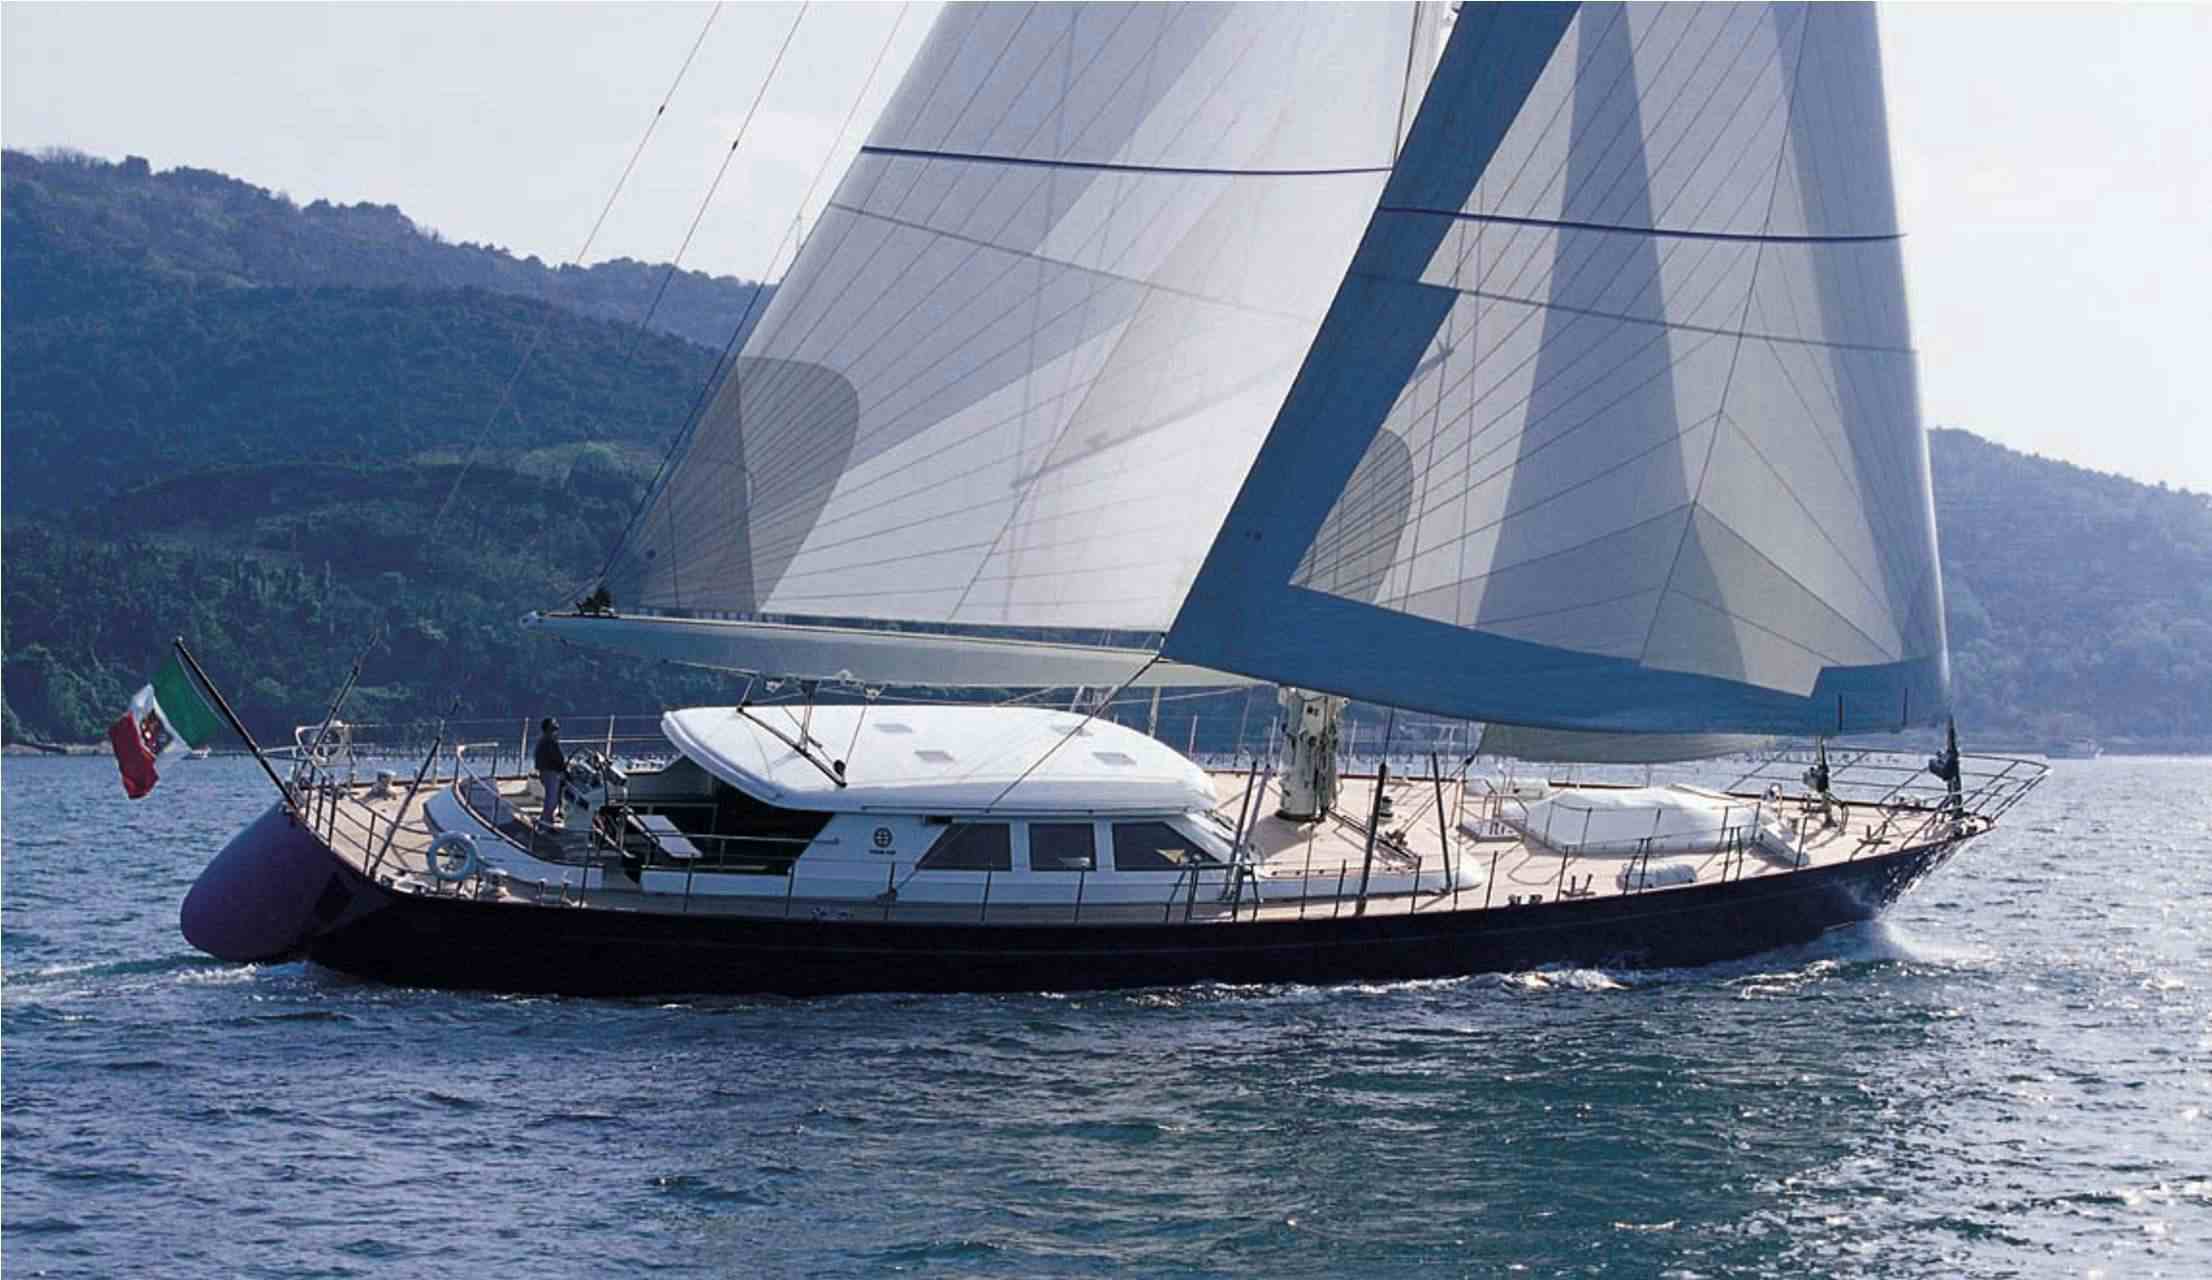 HERITAGE M - Yacht Charter Portisco & Boat hire in Fr. Riviera & Tyrrhenian Sea 1